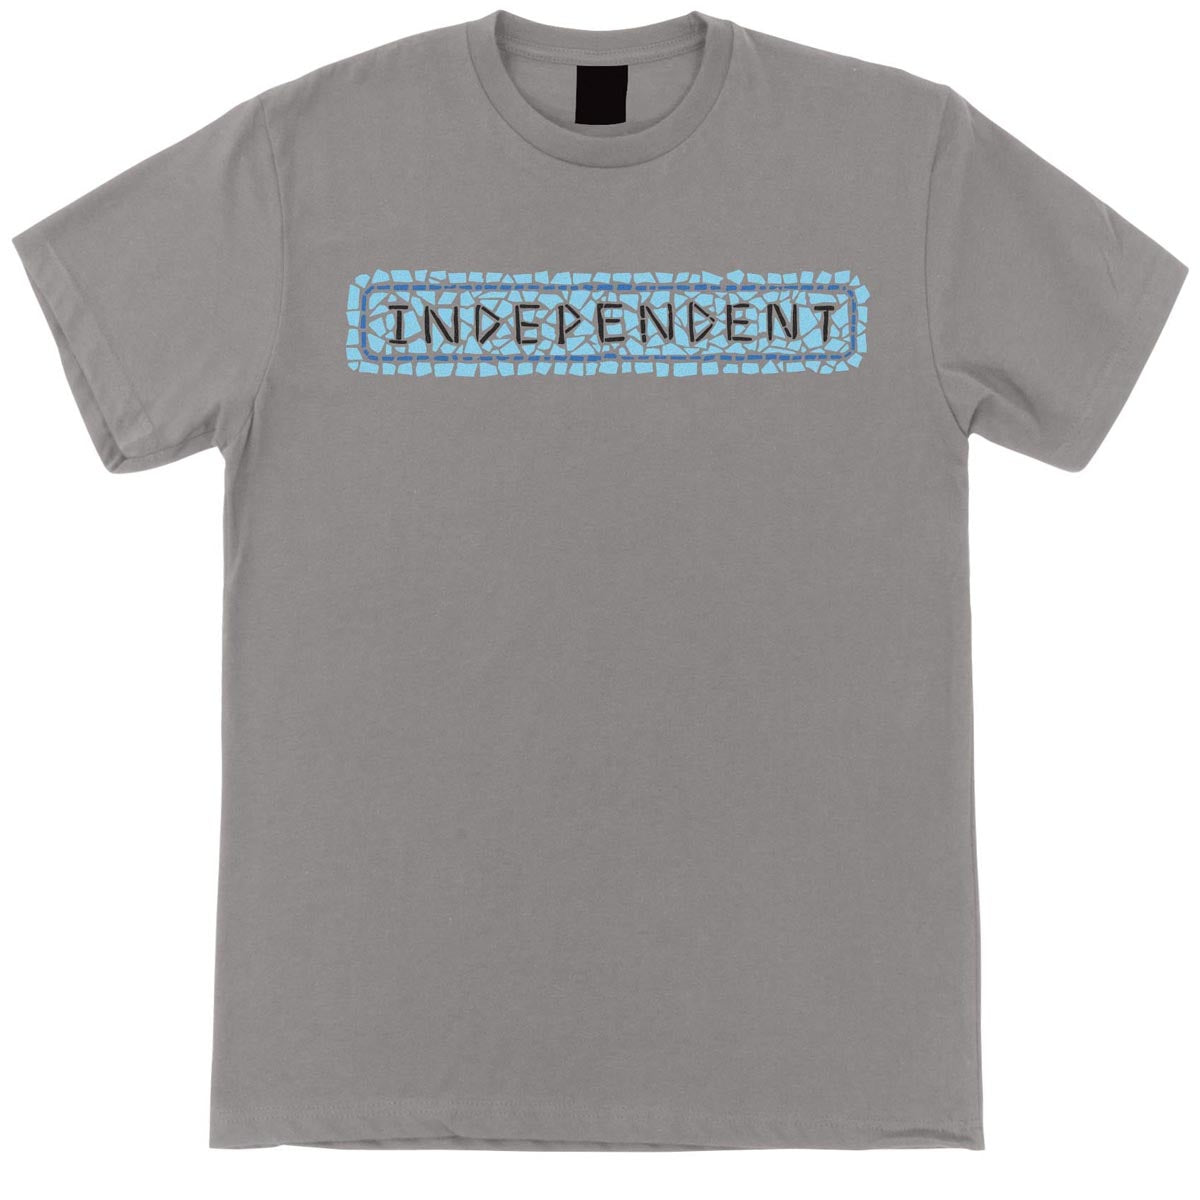 Independent Tile Bar T-Shirt - Medium Grey image 1